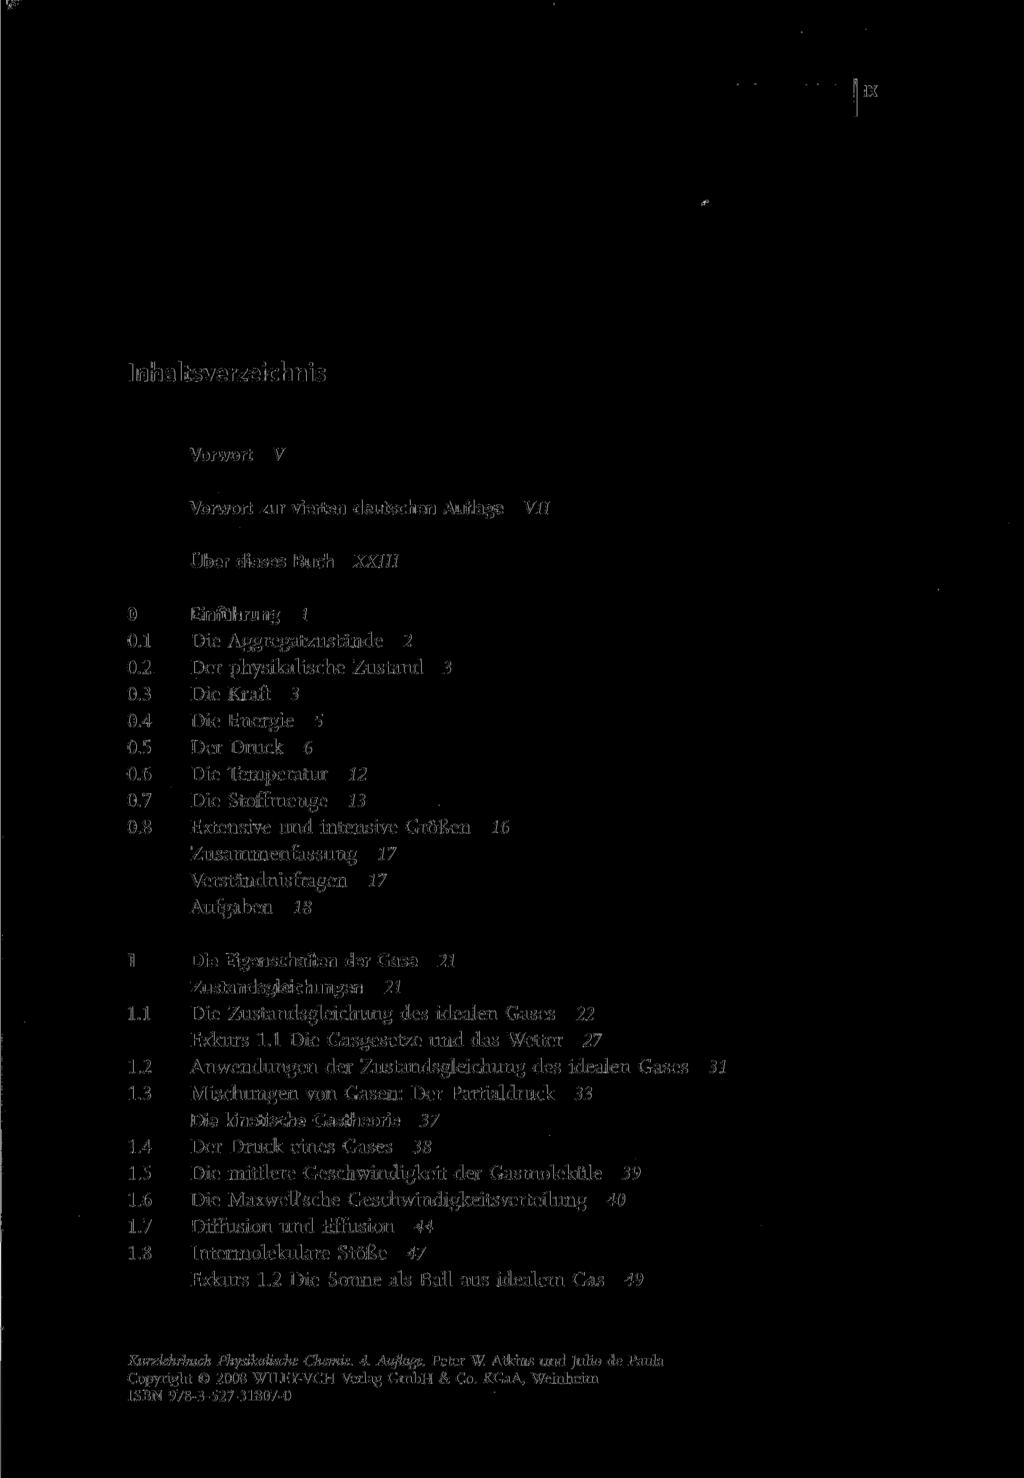 Inhaltsverzeichnis Vorwort V Vorwort zur vierten deutschen Auflage VII Über dieses Buch XXIII 0 Einfuhrung 1 0.1 Die Aggregatzustände 2 0.2 Der physikalische Zustand 3 0.3 Die Kraft 3 0.